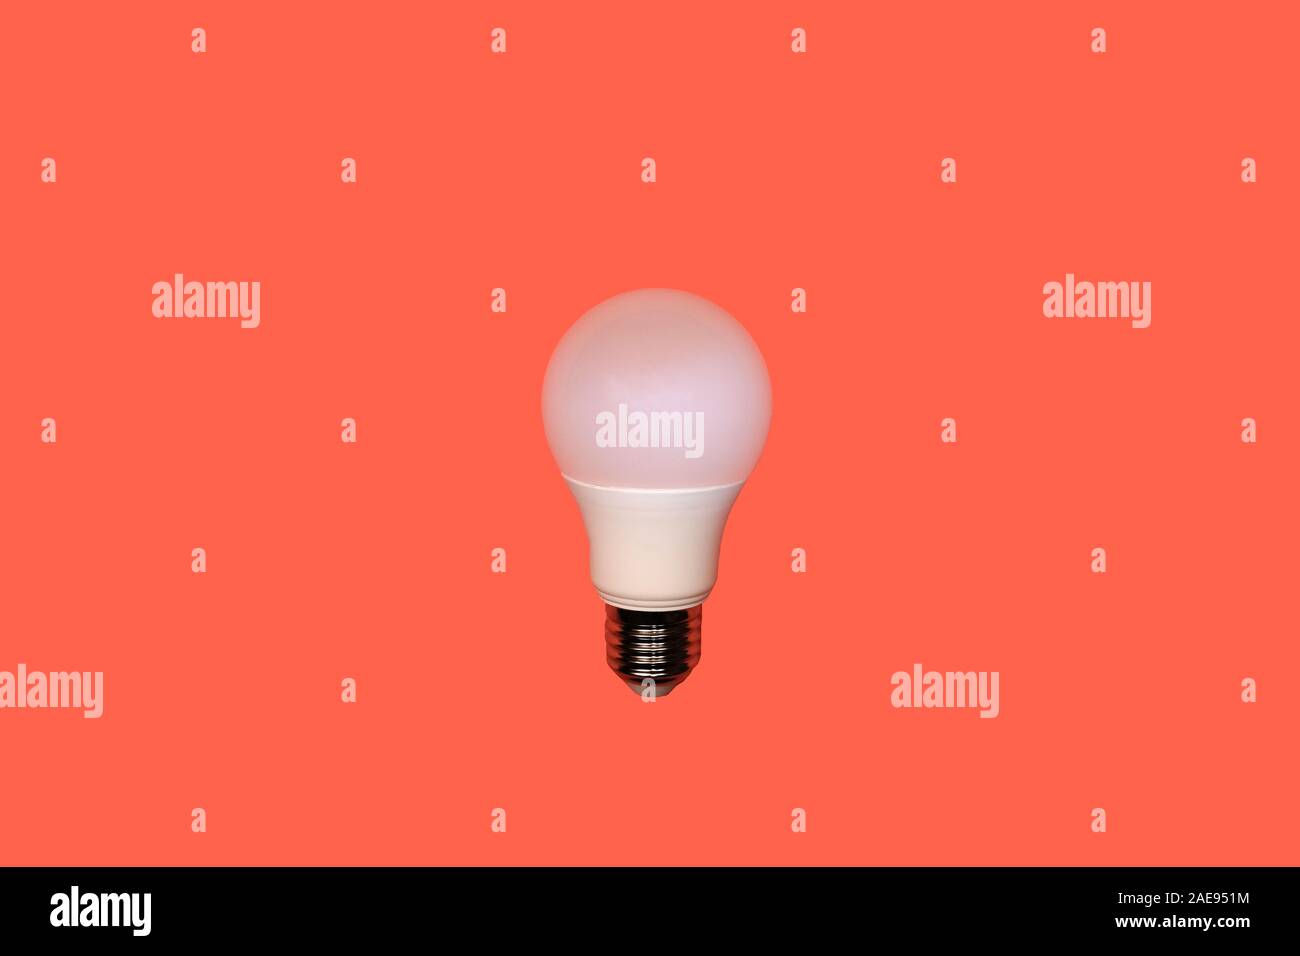 Eine weiße, runde LED-Lampe mit Schraube Metall Gewinde in der Mitte auf einem roten Hintergrund, Energiesparkonzept, kopieren Raum Stockfoto